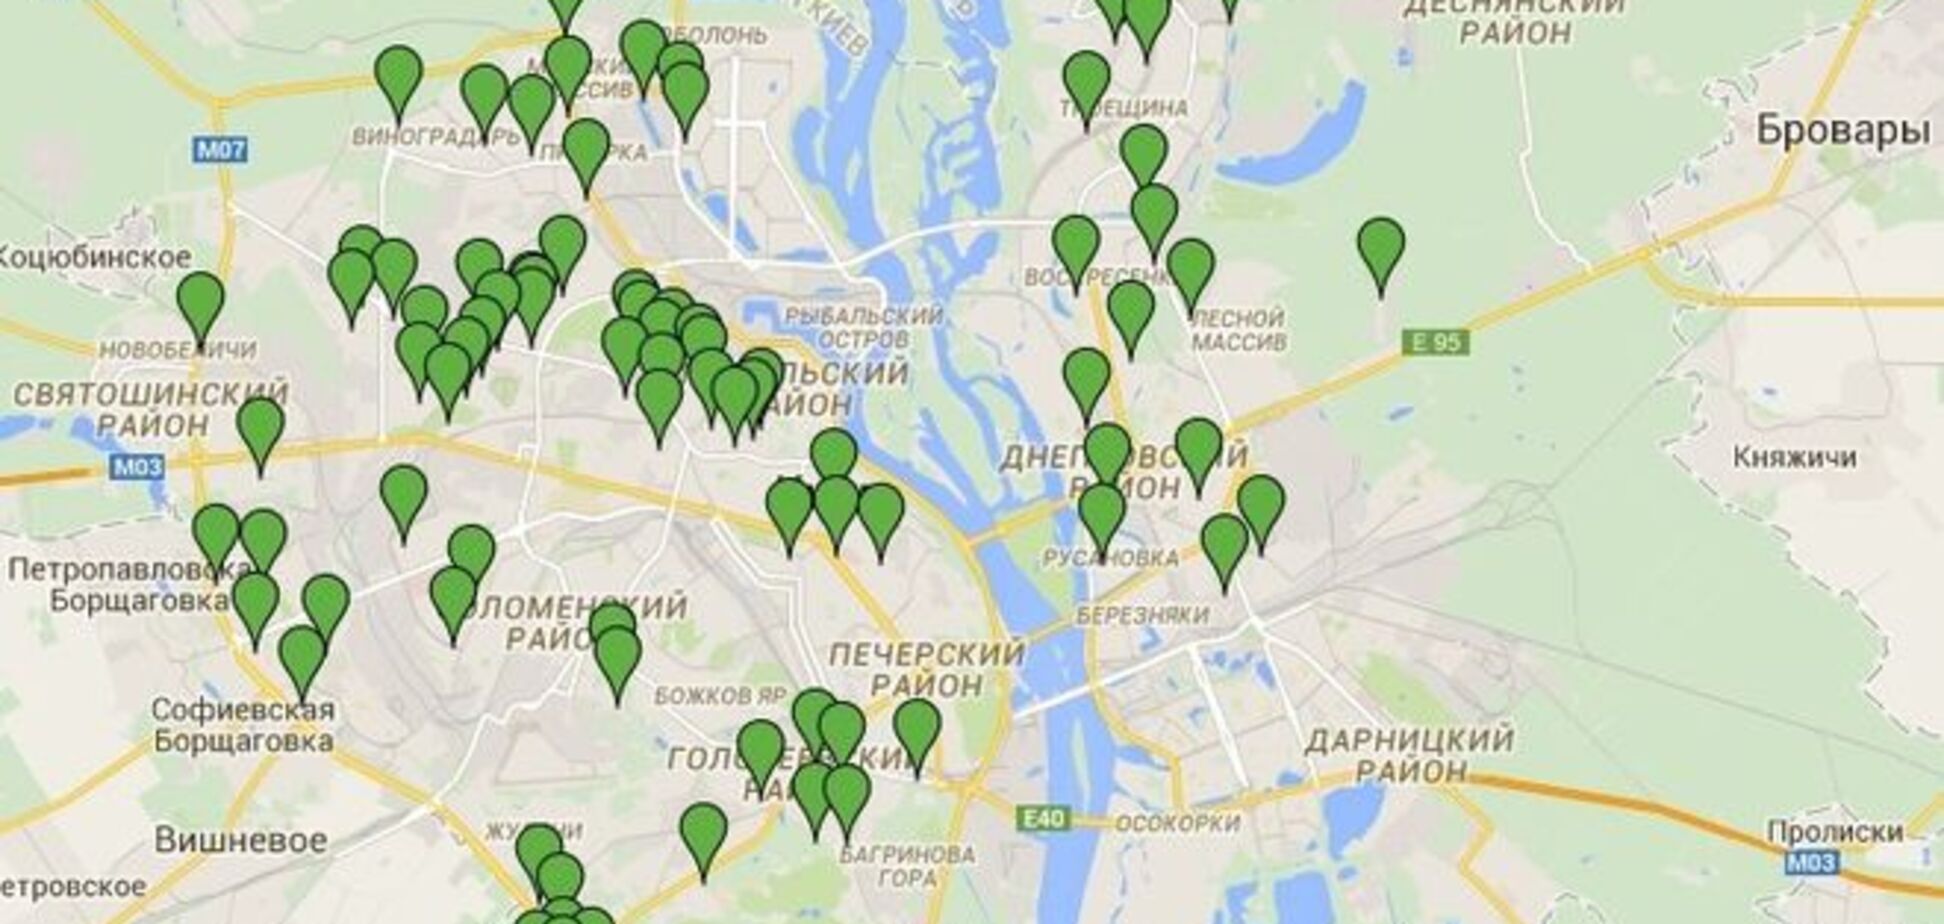 В Киеве создали онлайн-карту мест для выгула собак 